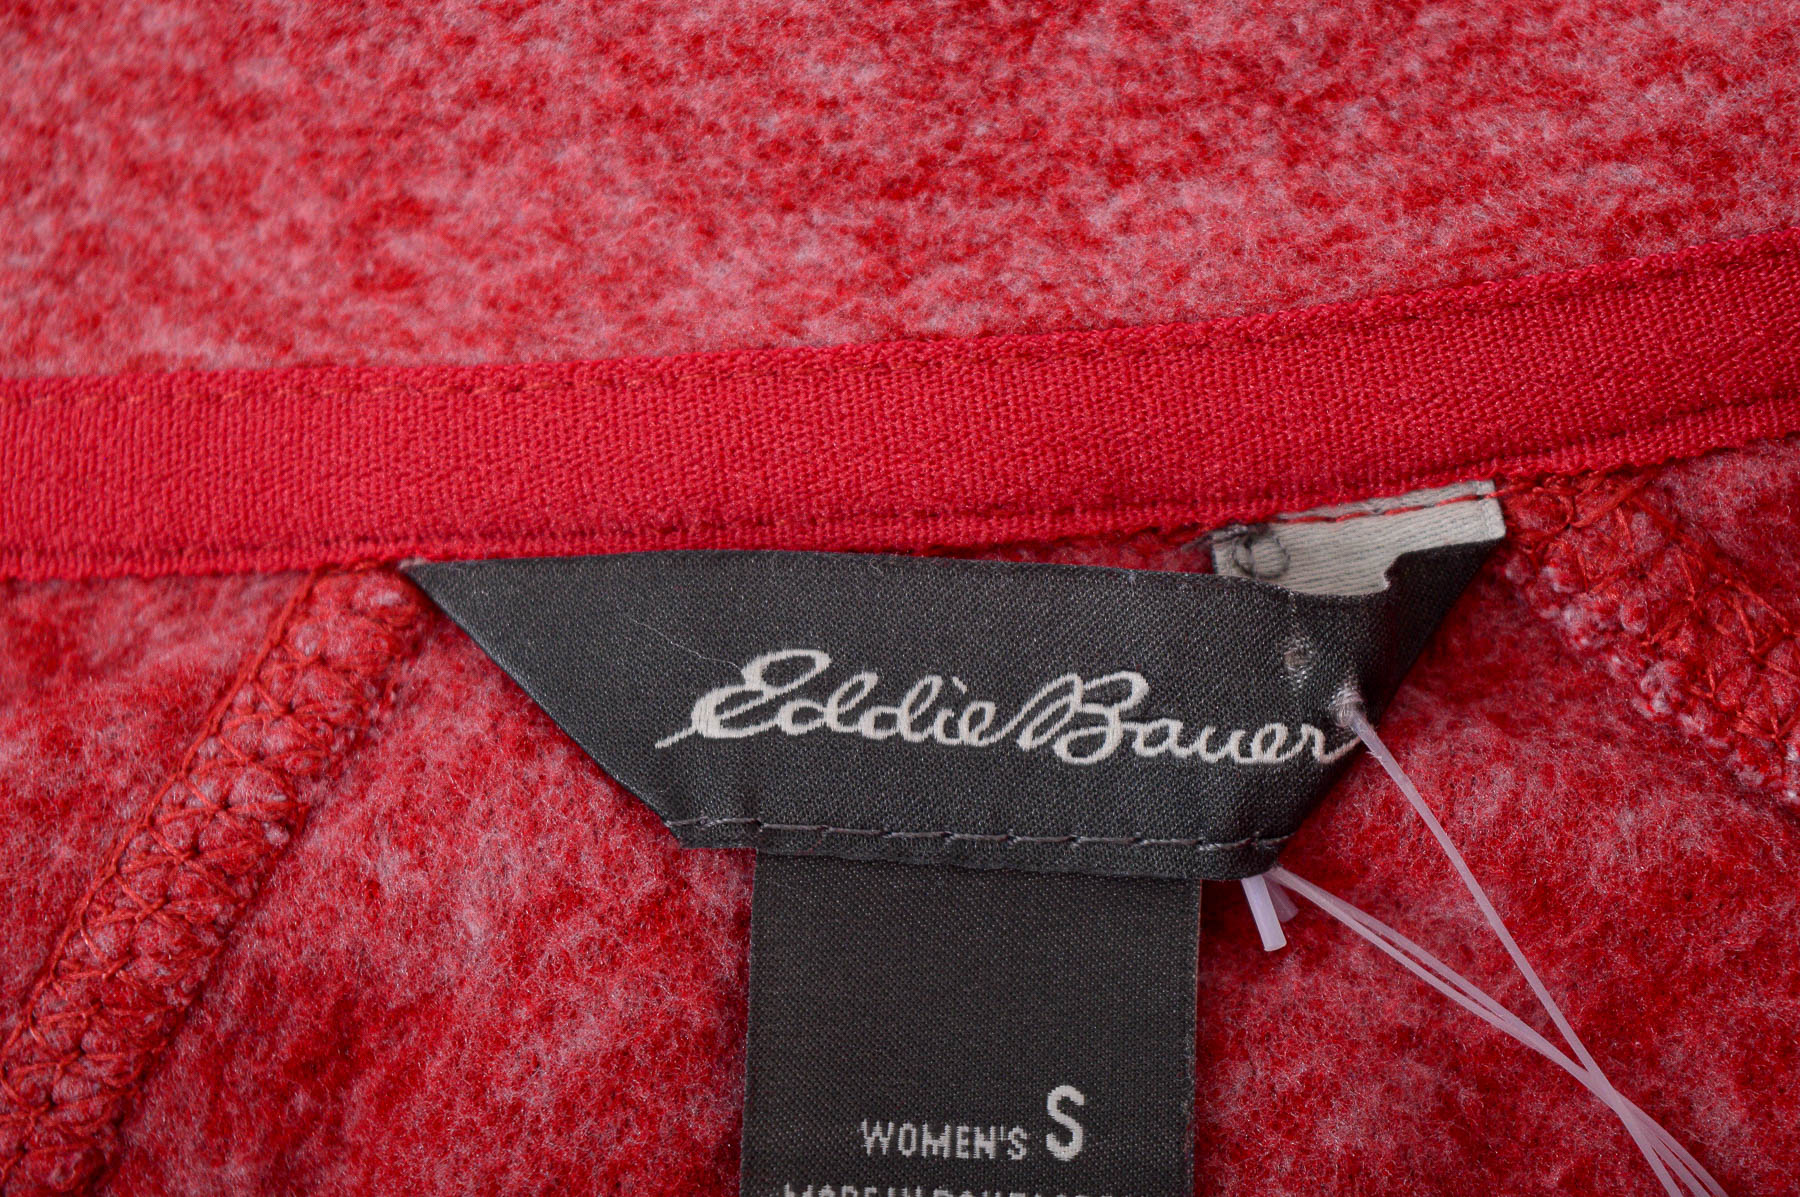 Γυναικείο ρούχο απο πολικό υφασμα - Eddie Bauer - 2